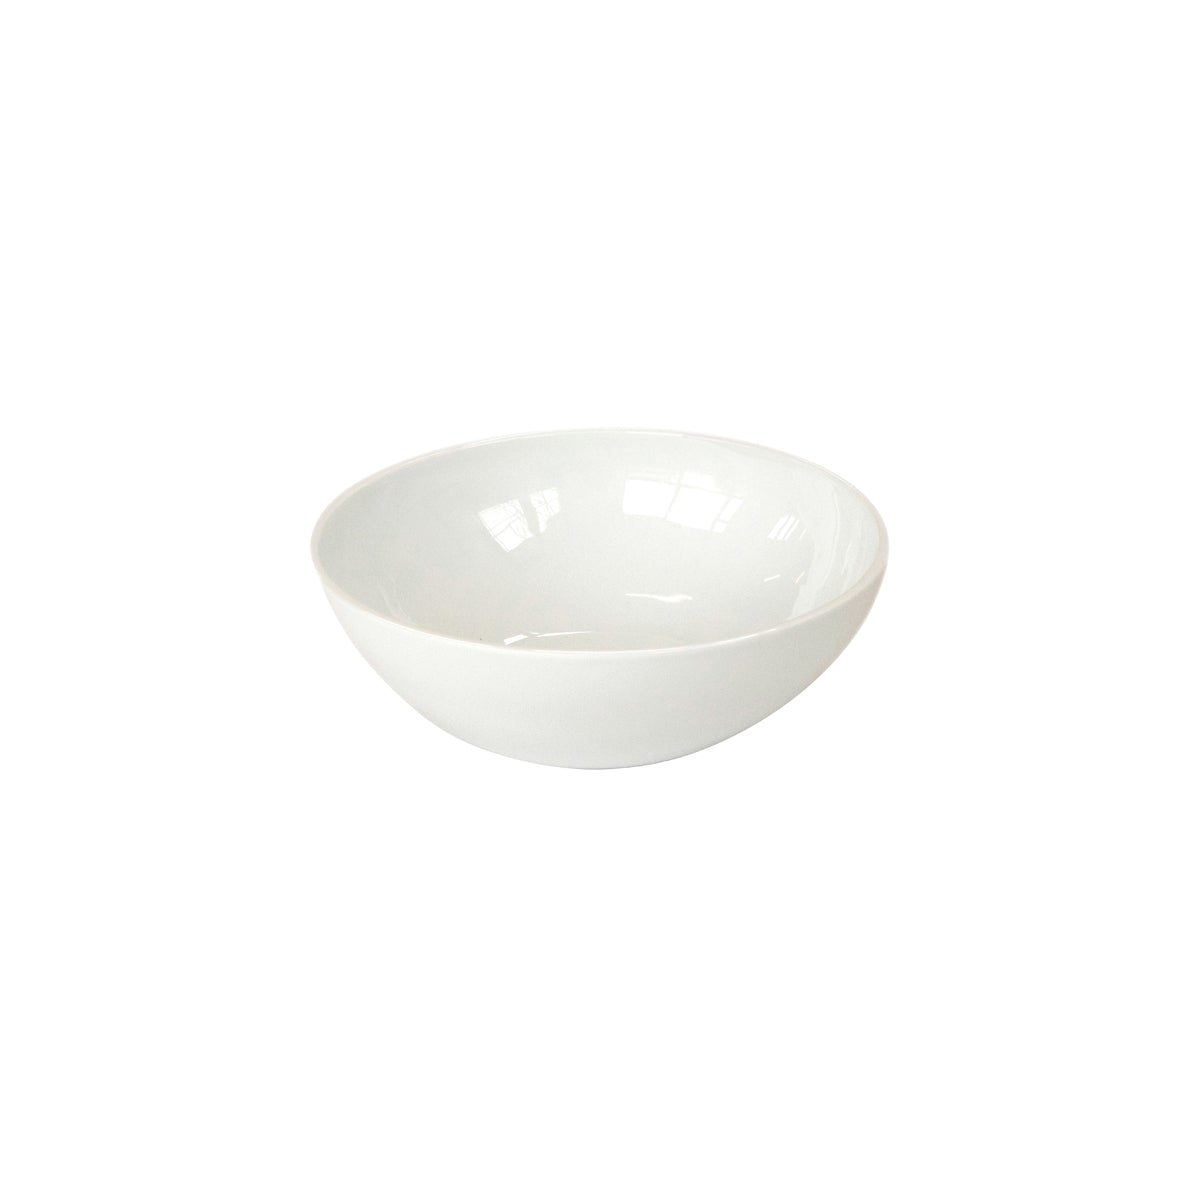 CRASTERBWCR1701 Craster Craster Tilt White Ceramic Bowl Large 290x100mm / 3.5Lt Tomkin Australia Hospitality Supplies